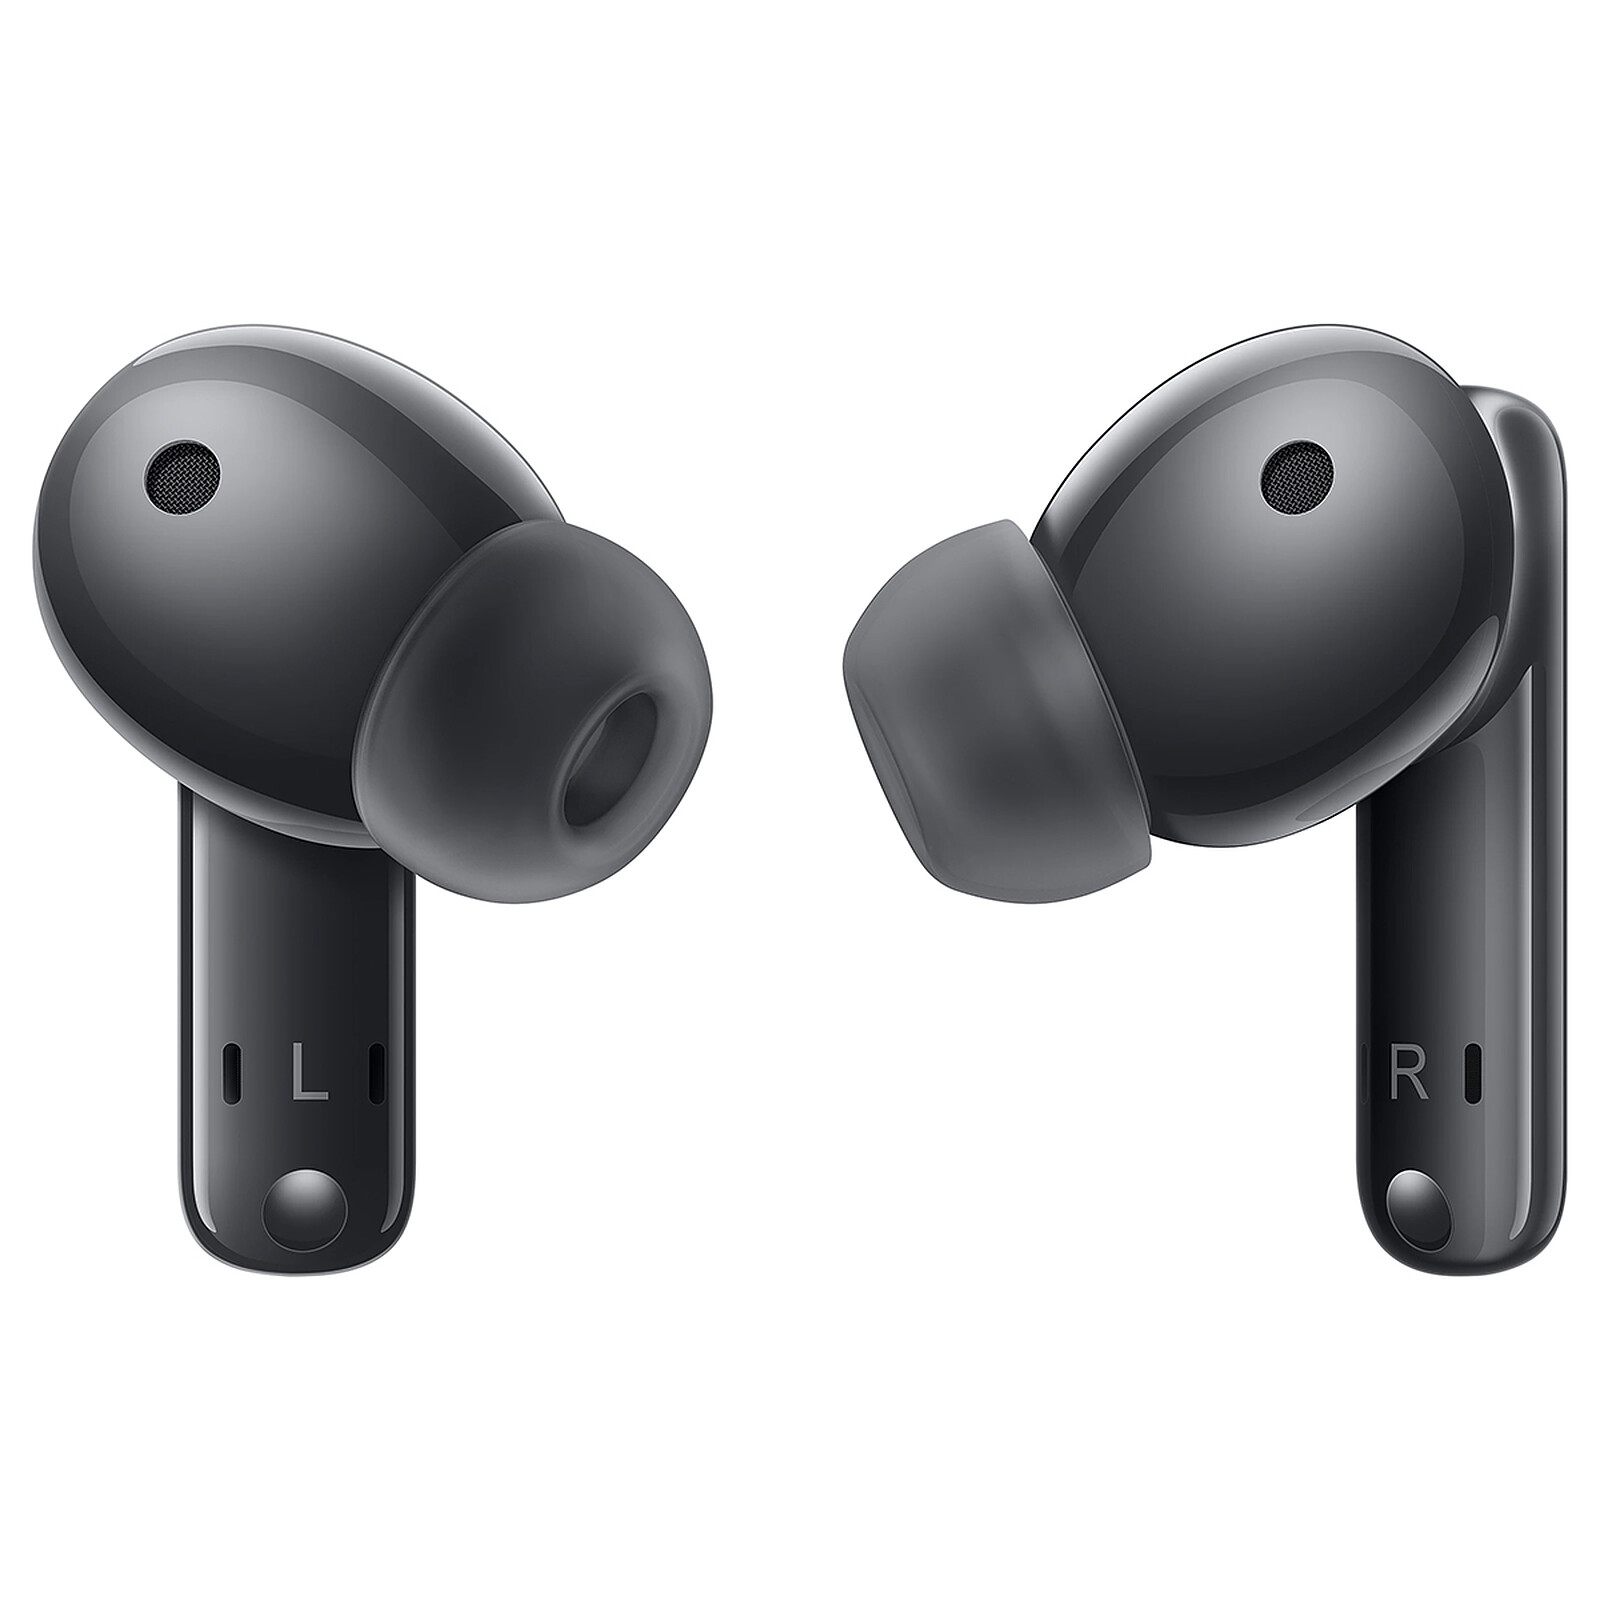 Probamos los Huawei FreeBuds Pro 3: auriculares de alta calidad